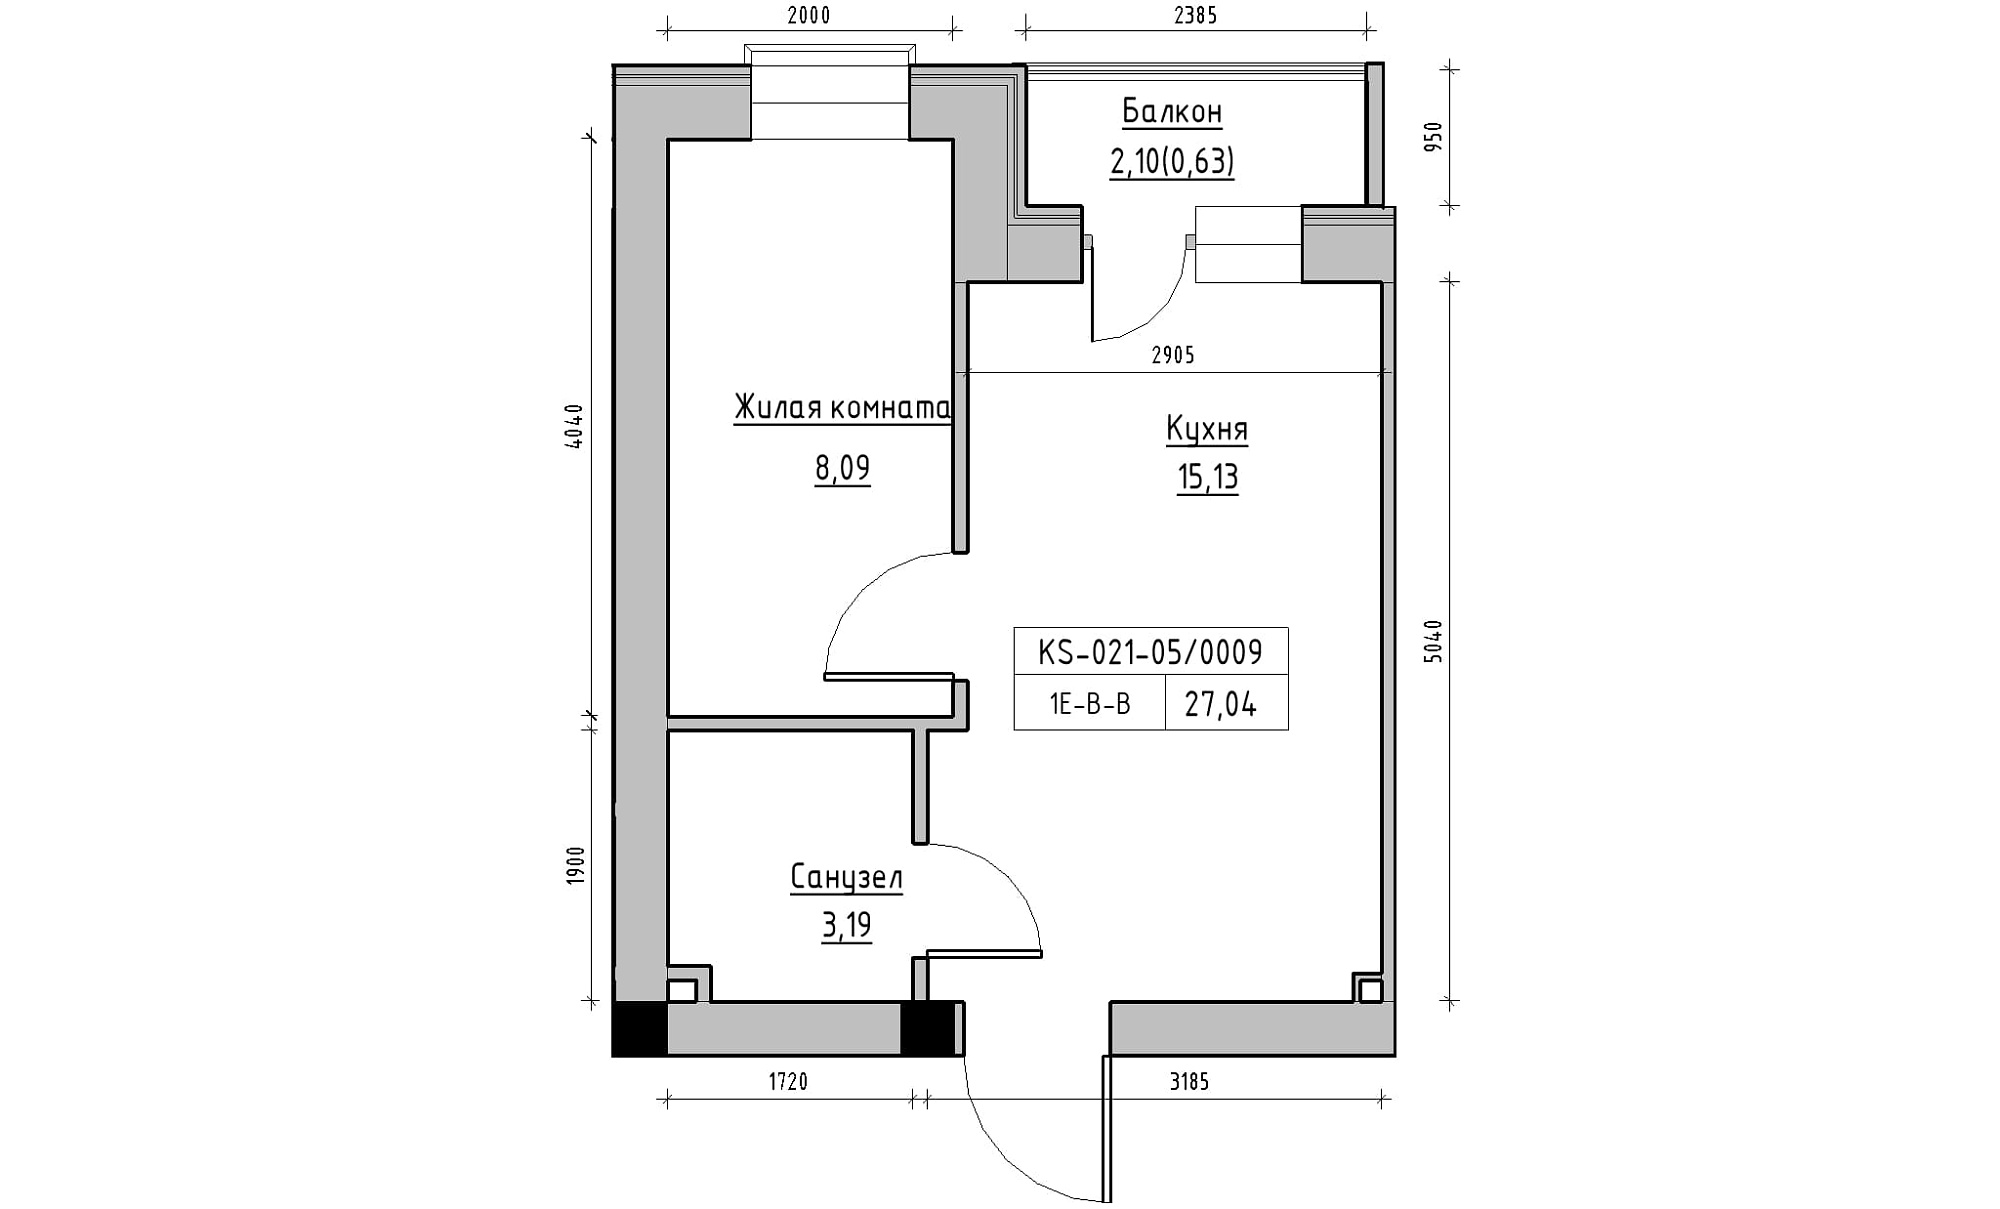 Планування 1-к квартира площею 27.04м2, KS-021-05/0009.